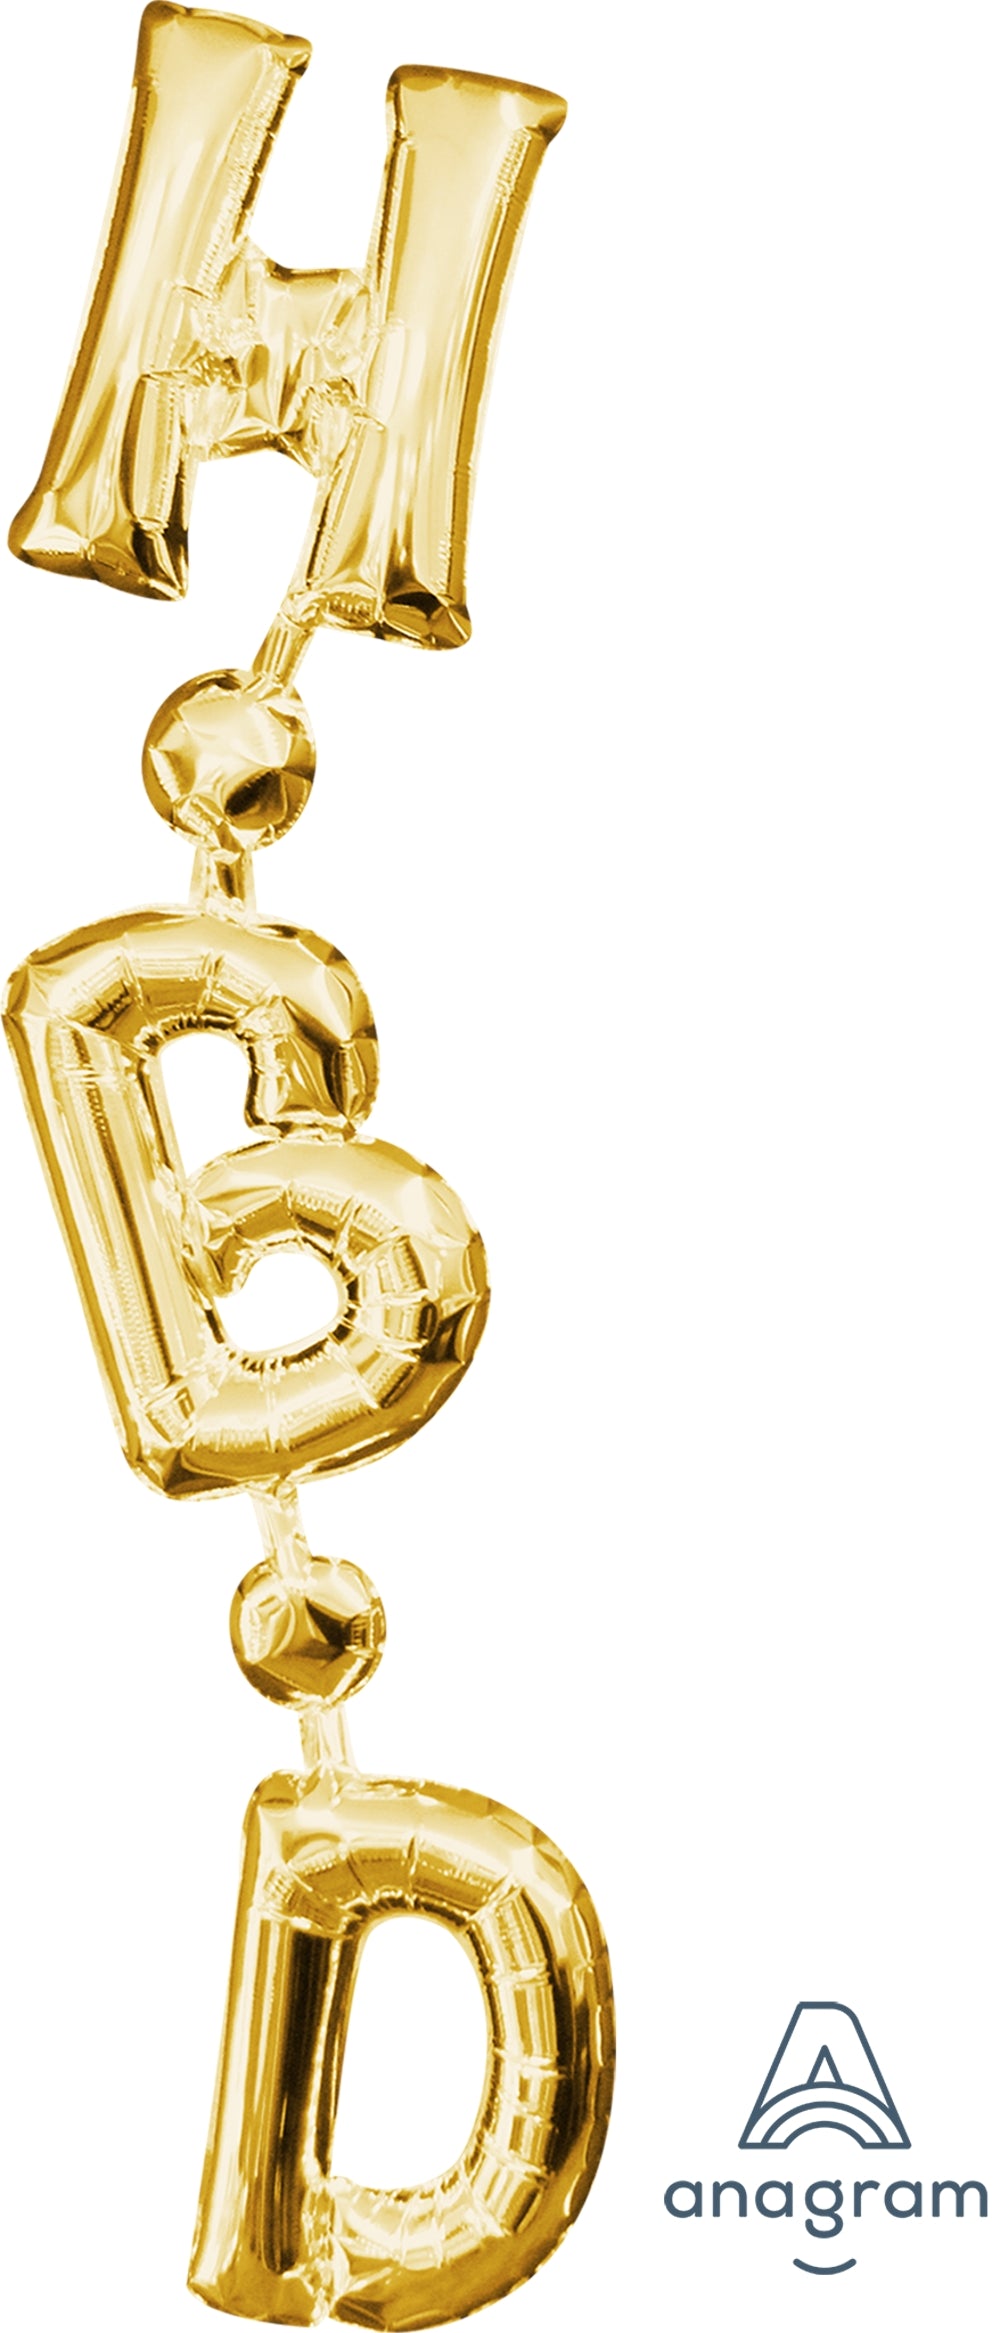 H.B.D 連體詞鋁質氣球 | 40吋 happy birthday 生日 生日快樂